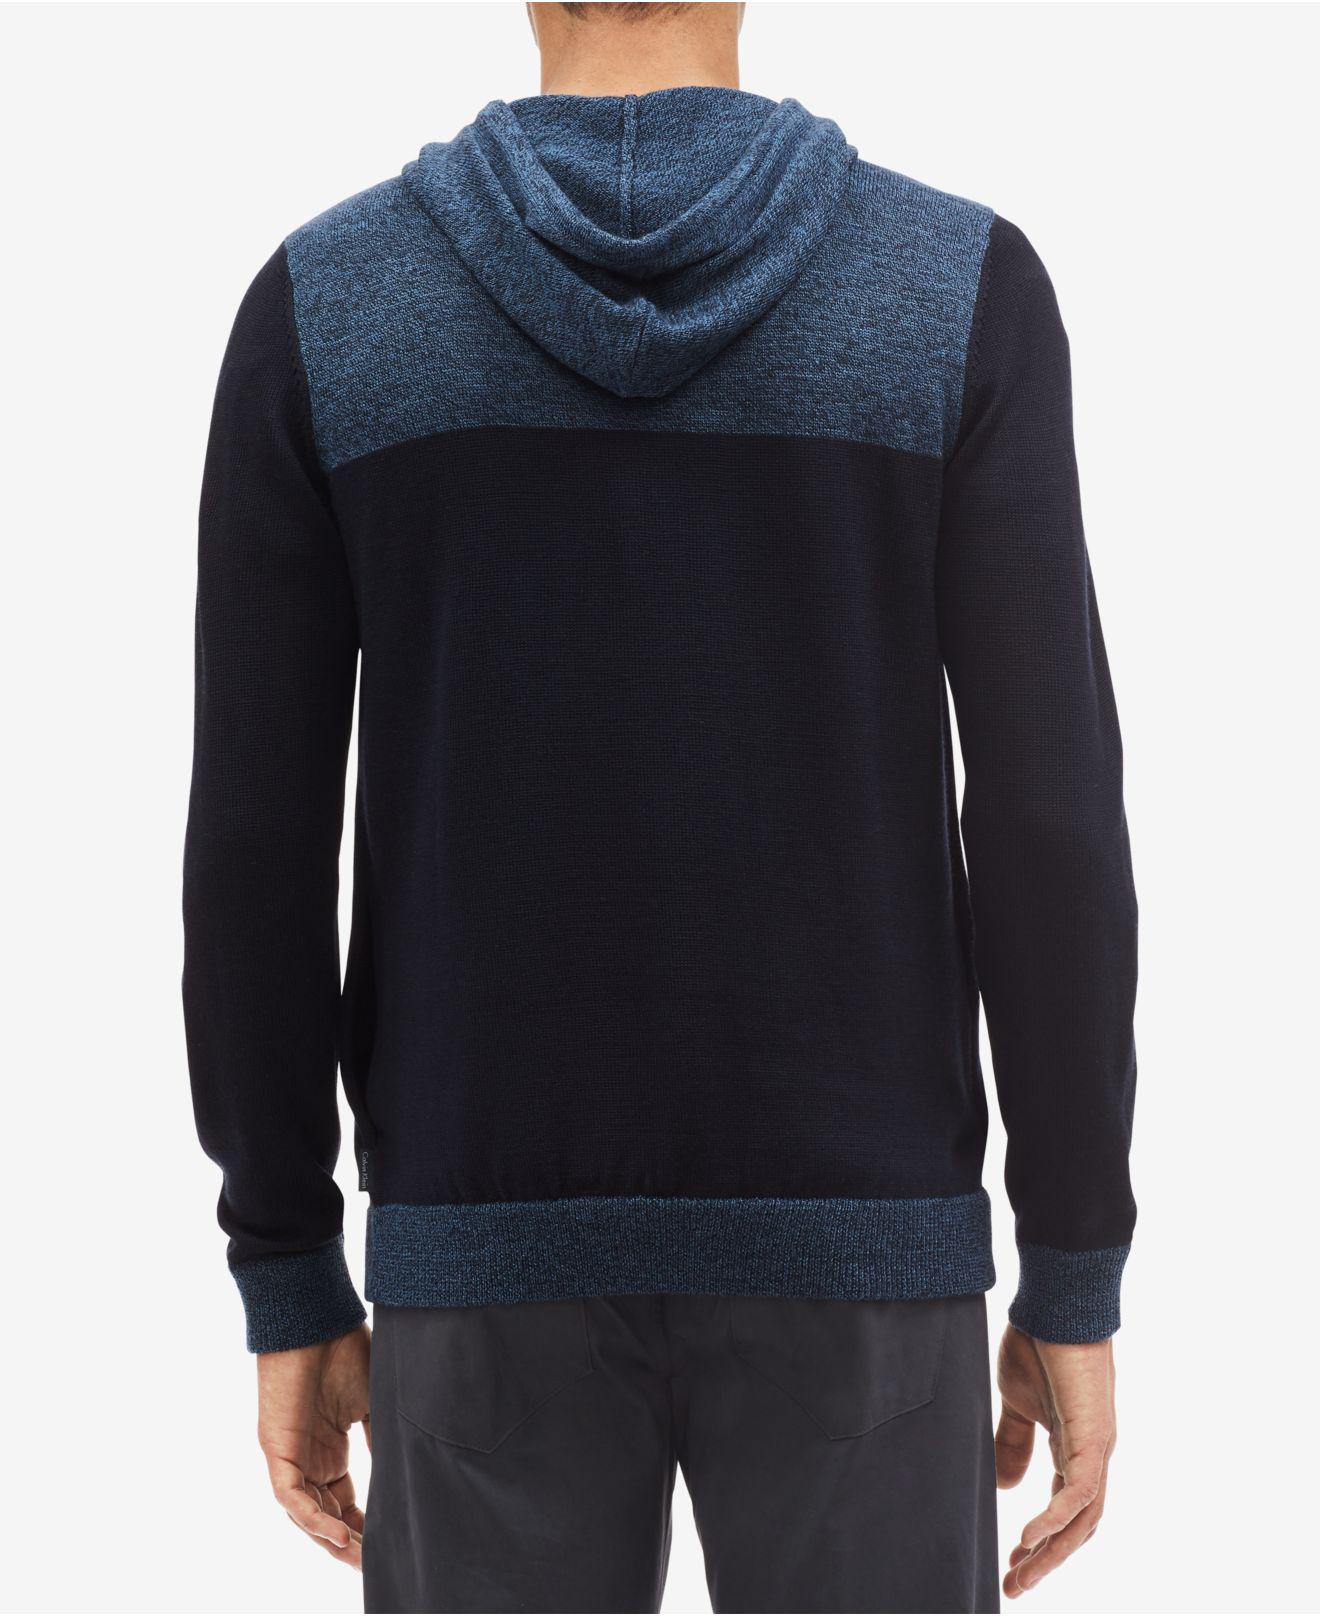 Lyst - Calvin Klein Full-zip Colorblocked Hoodie in Blue for Men